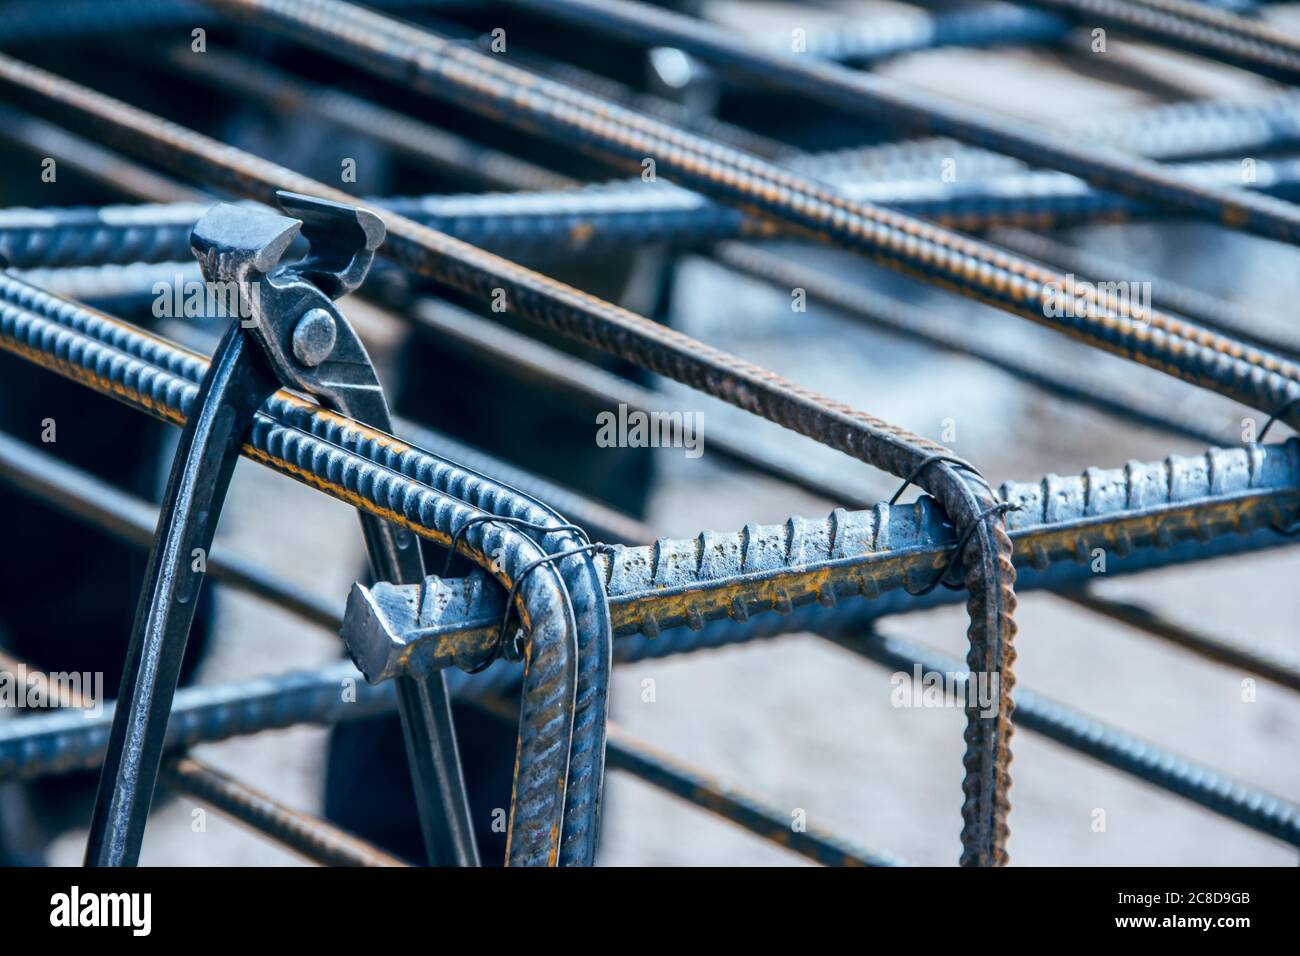 Zange zum Binden von Verstärkungen. Stahlzange für die Bauindustrie  Stockfotografie - Alamy